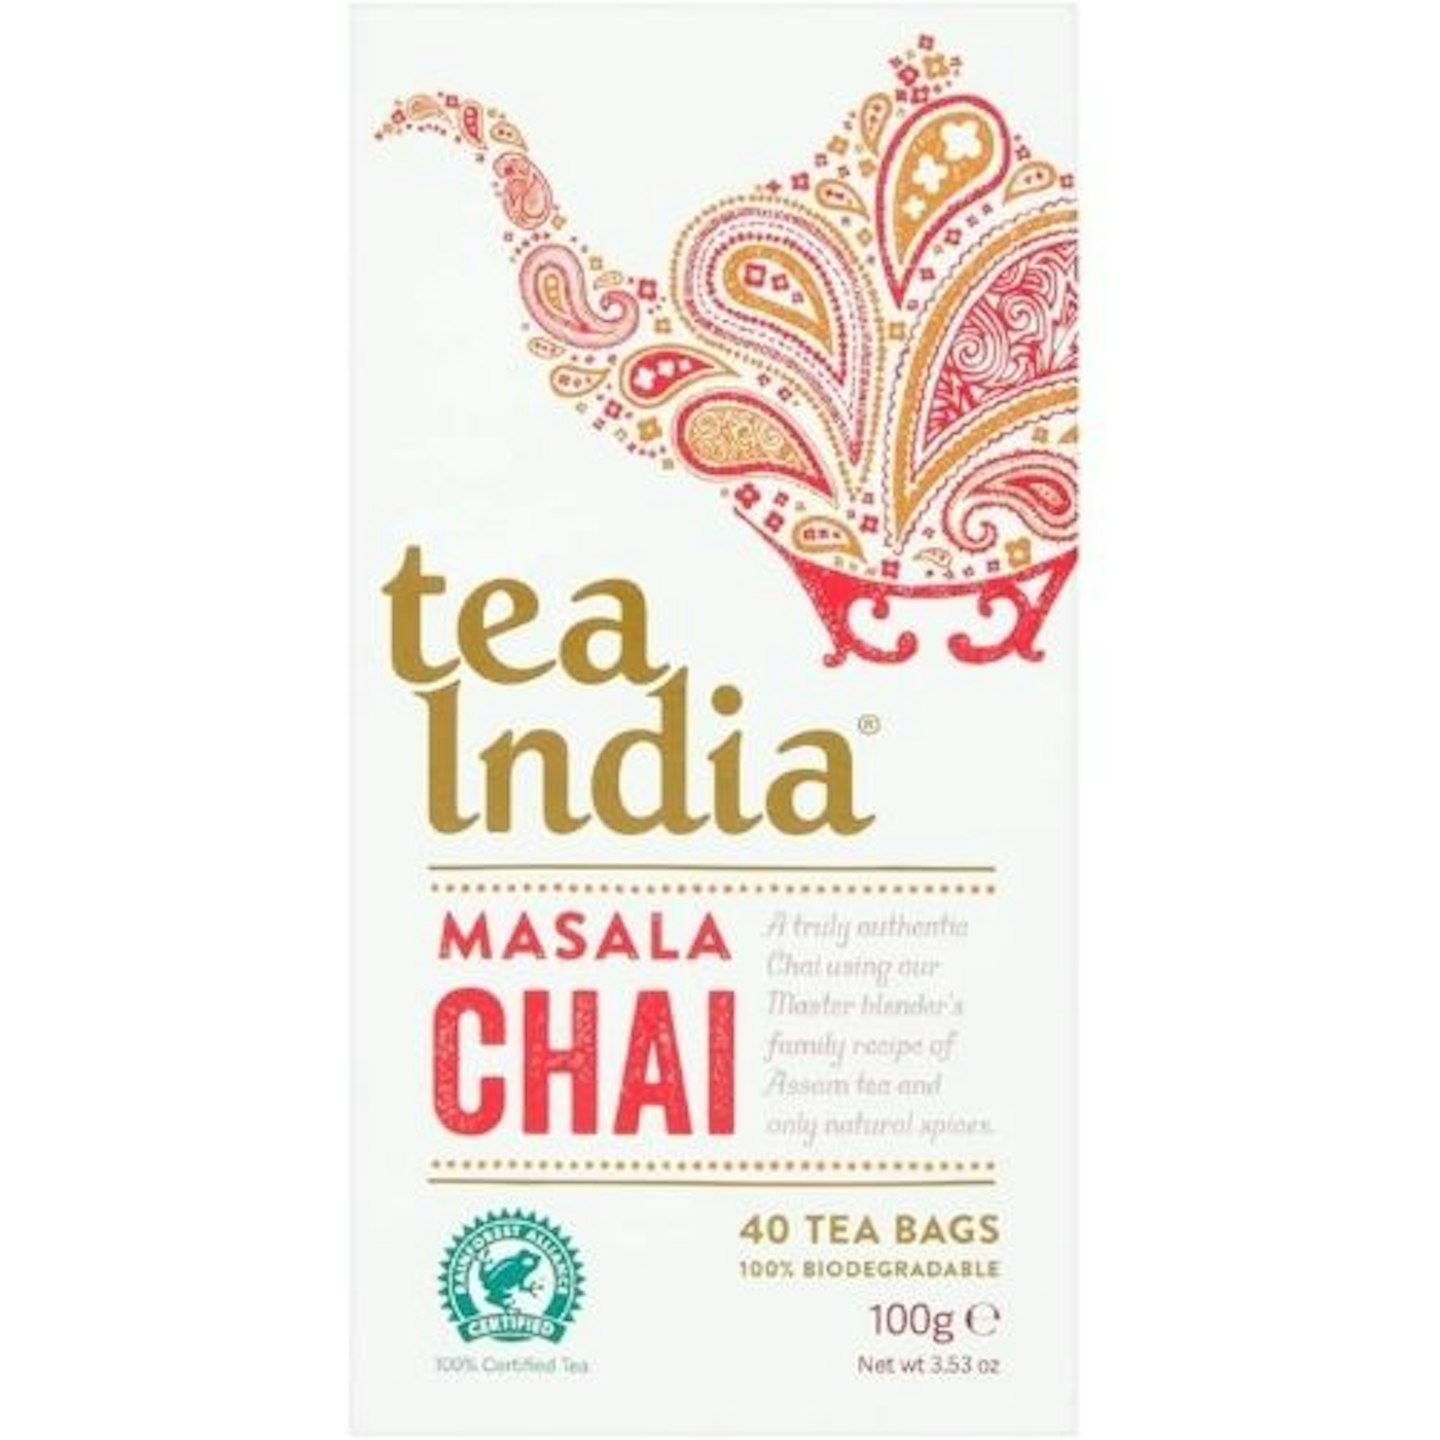 Tea India Masala Chai Tea Bags (40)